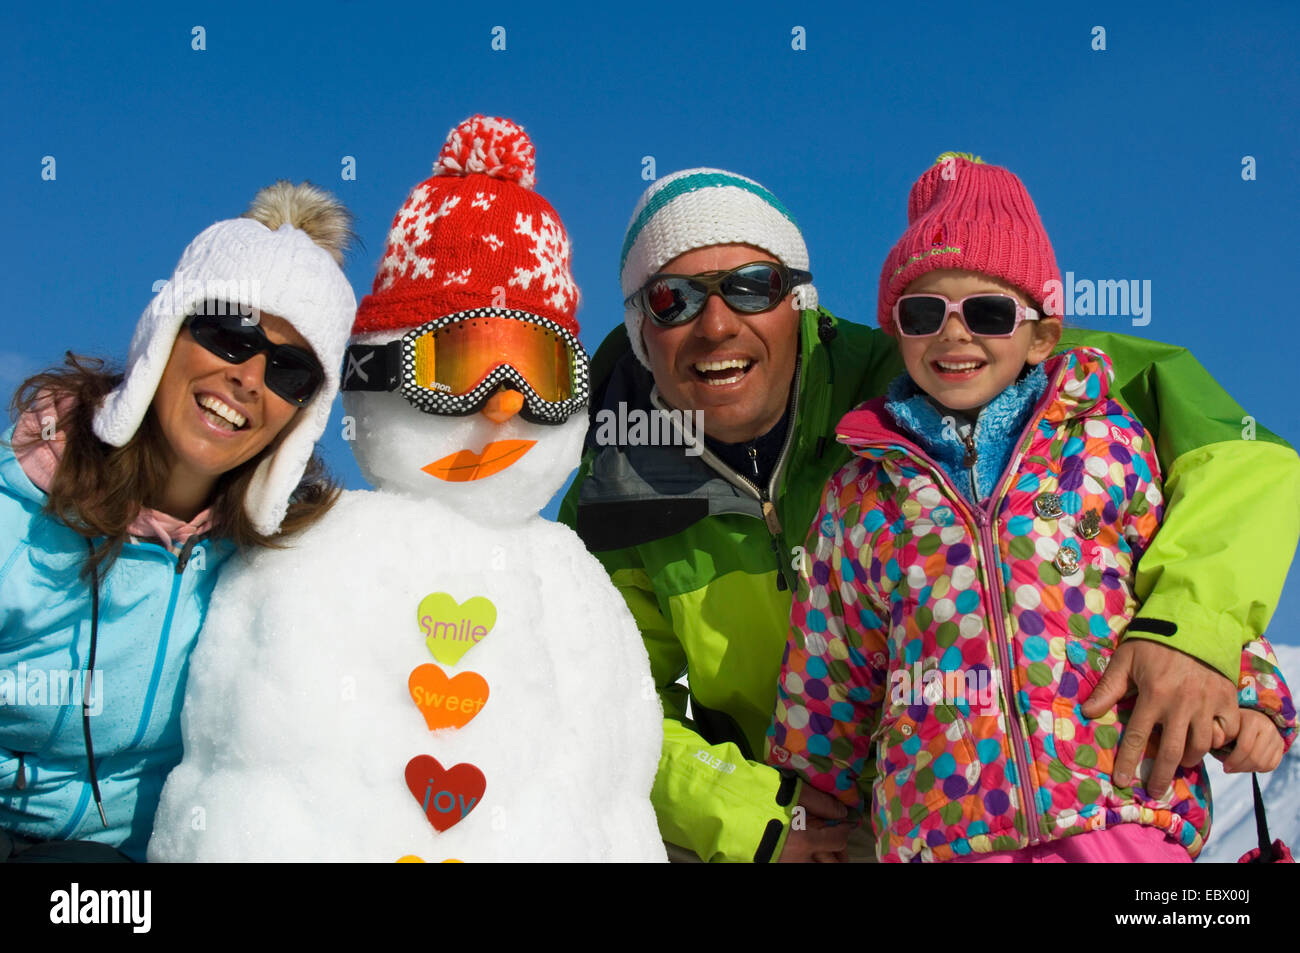 Photo de groupe d'une famille de trois personnes en vêtements d'hiver avec un bonhomme de neige pendant les vacances à la montagne, France Banque D'Images